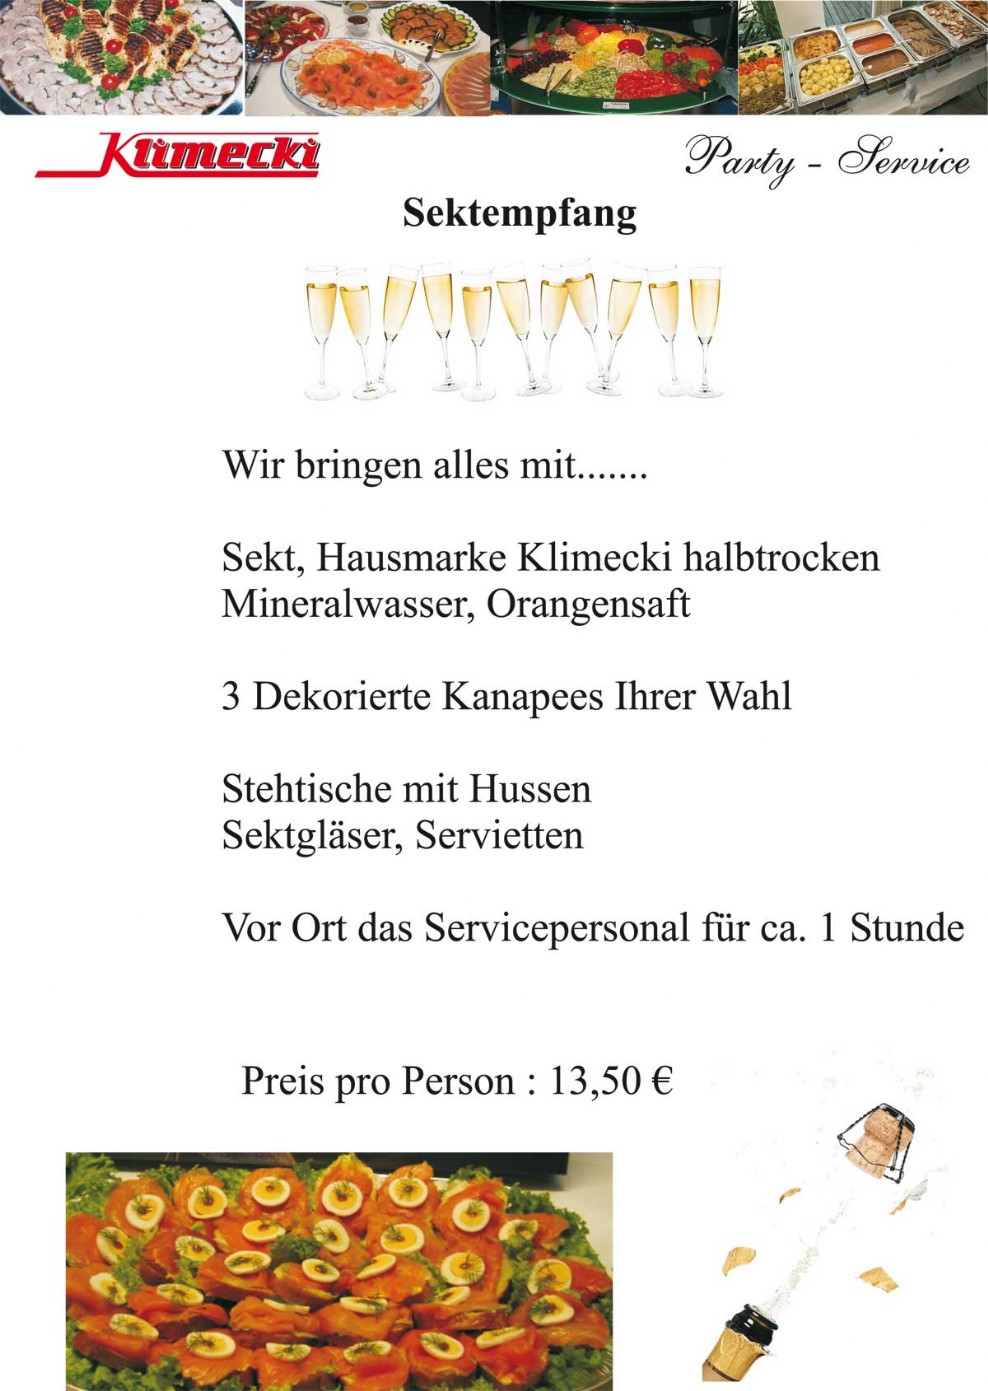 Partyservice Klimecki - Flyer zum Sektempfang